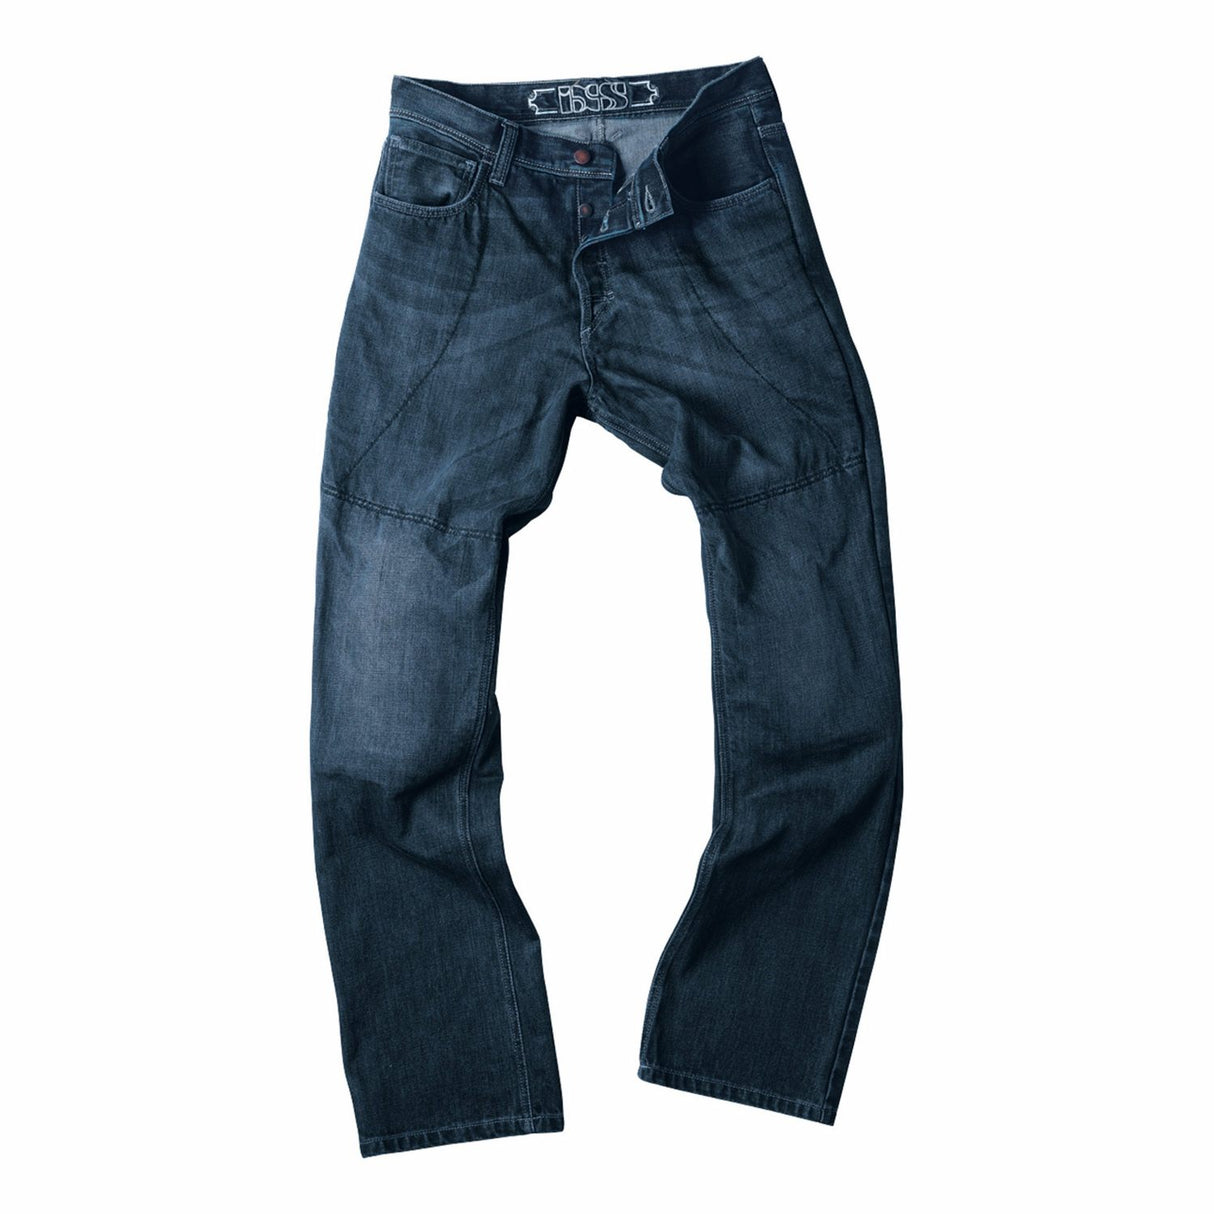 IXS Men's Longley Jeans